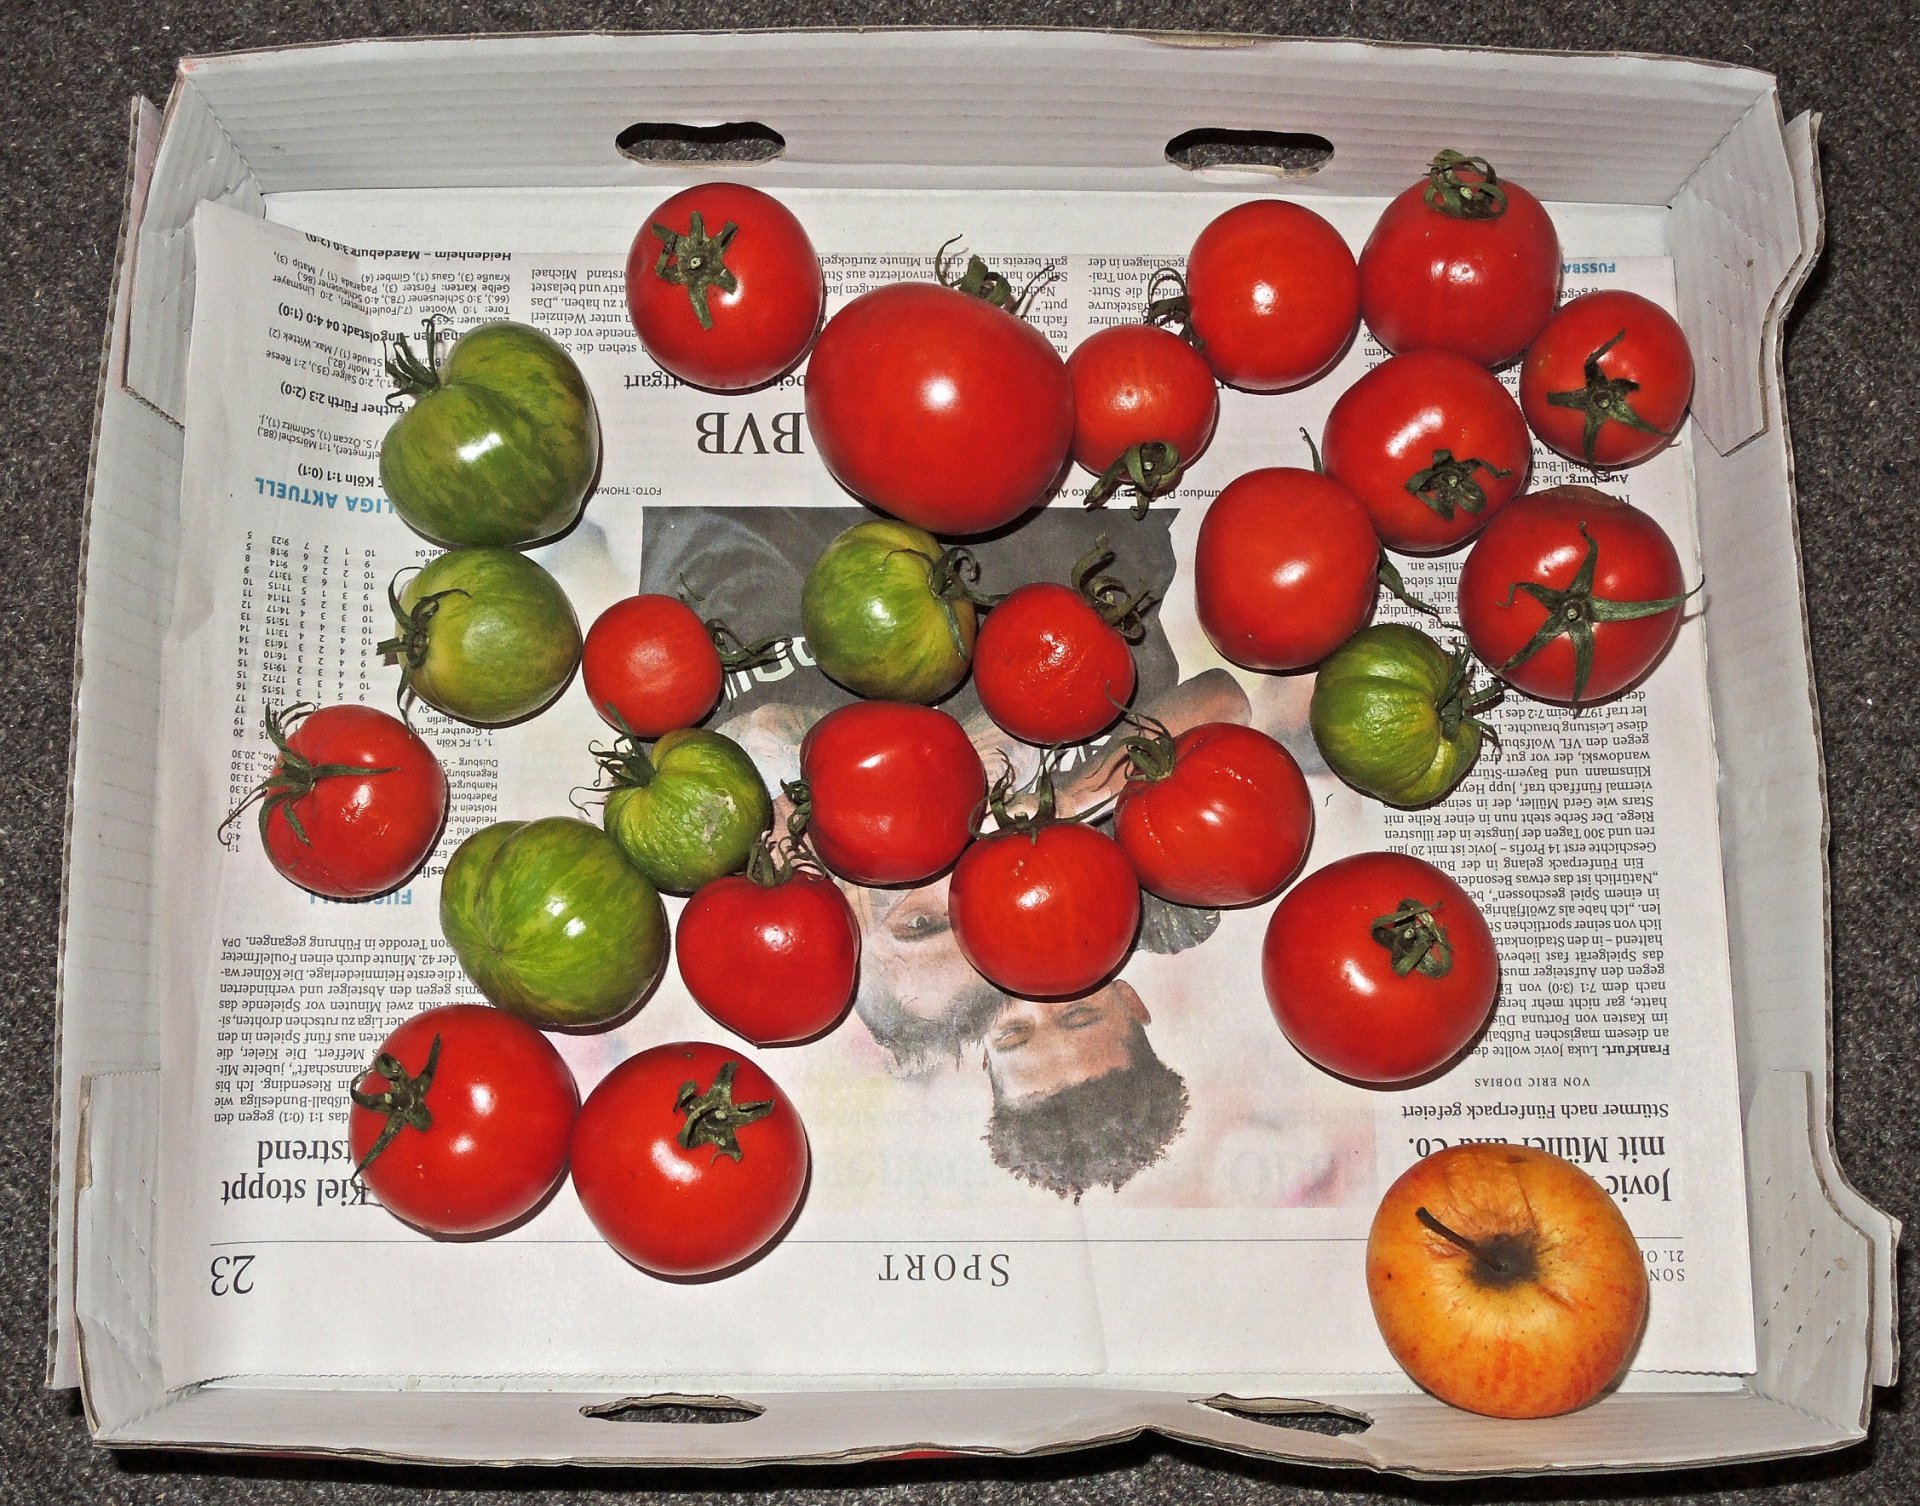 tomatiges.jpg